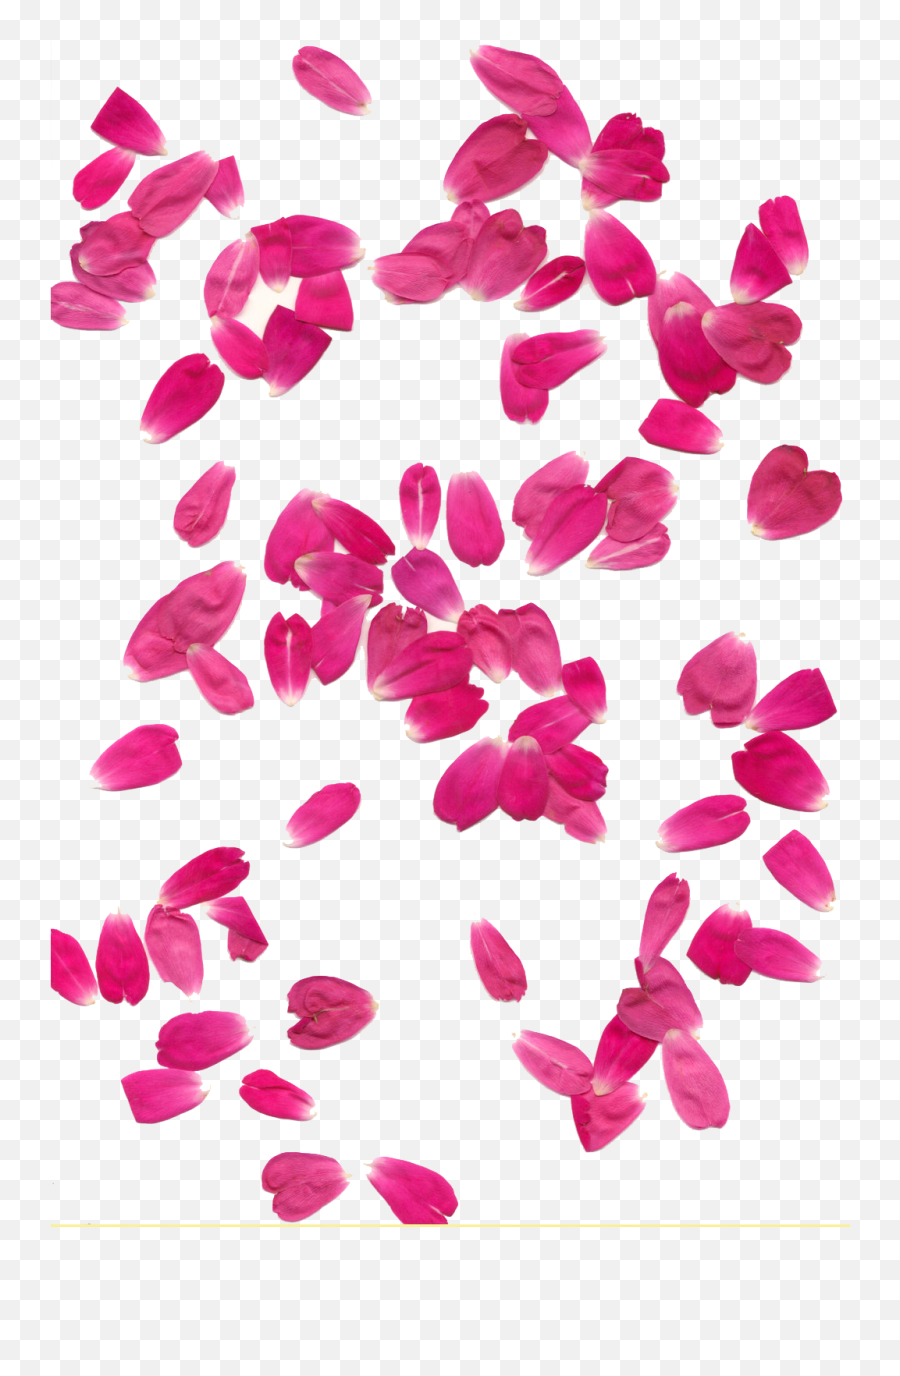 Transparent Background Hq Png Image - Transparent Background Pink Flower Petals Png,Roses Transparent Background